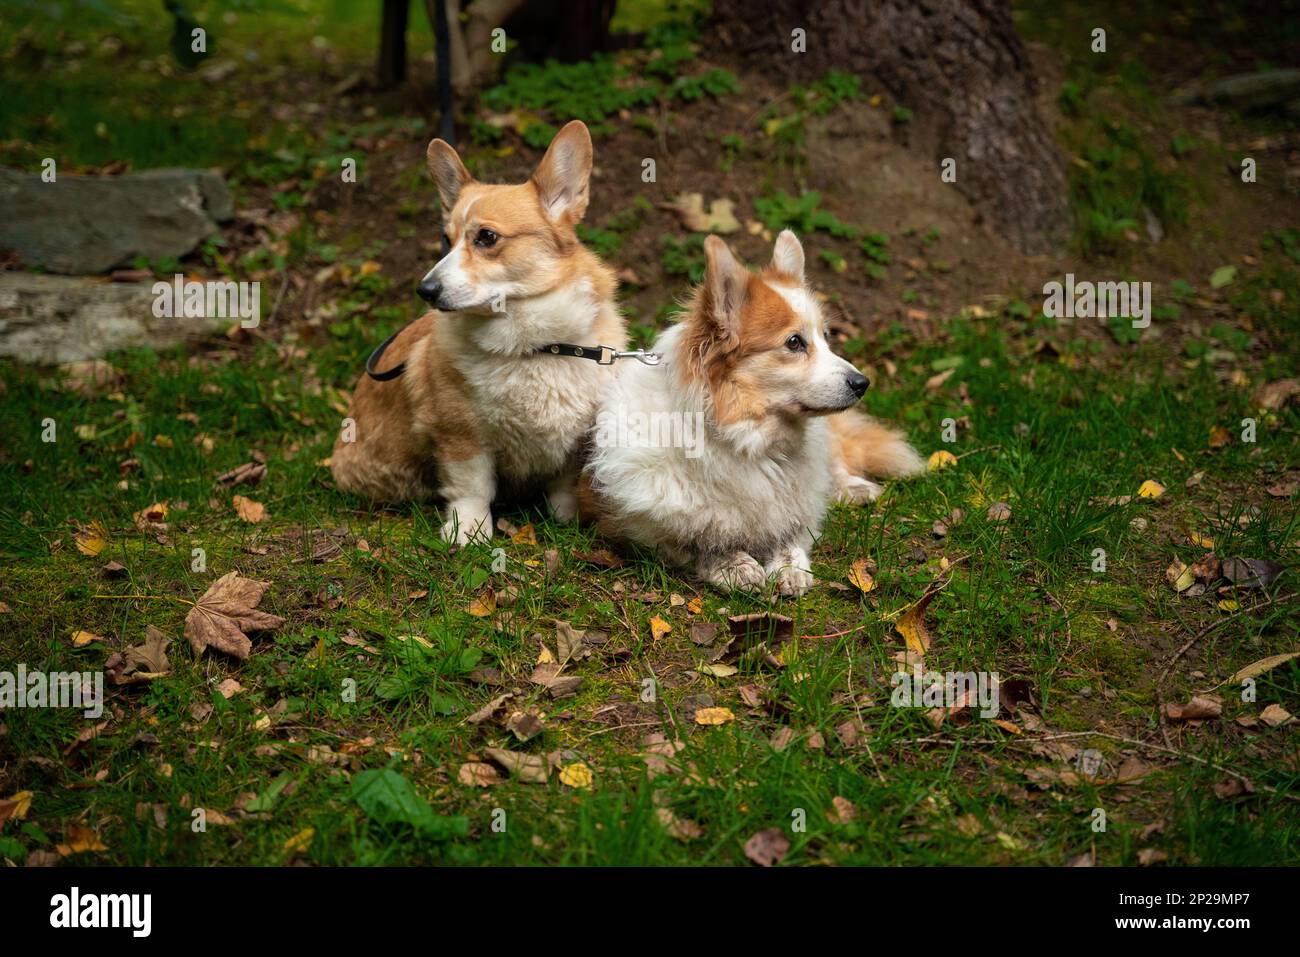 Deux chiens gallois Corgi Pembroke s'assoient attachés en attendant leur propriétaire. Un chien dans les montagnes Banque D'Images